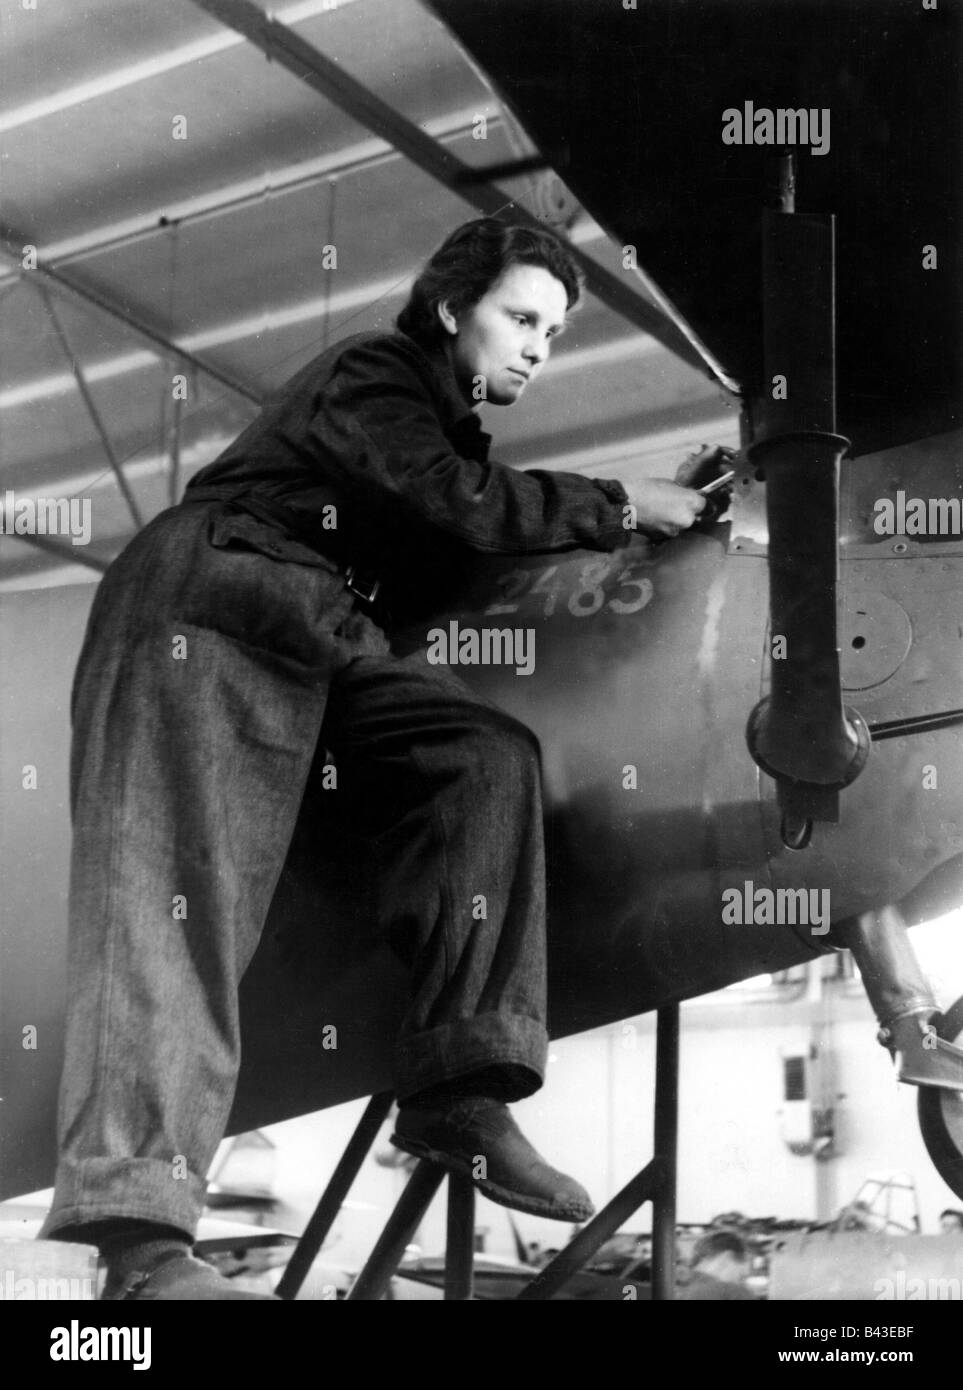 Événements, deuxième Guerre mondiale / seconde Guerre mondiale, Allemagne, industrie de l'armement, assemblage d'aéronefs, travailleur féminin à l'empennage d'un Messerschmitt Bf 109 E, vers 1940, Banque D'Images